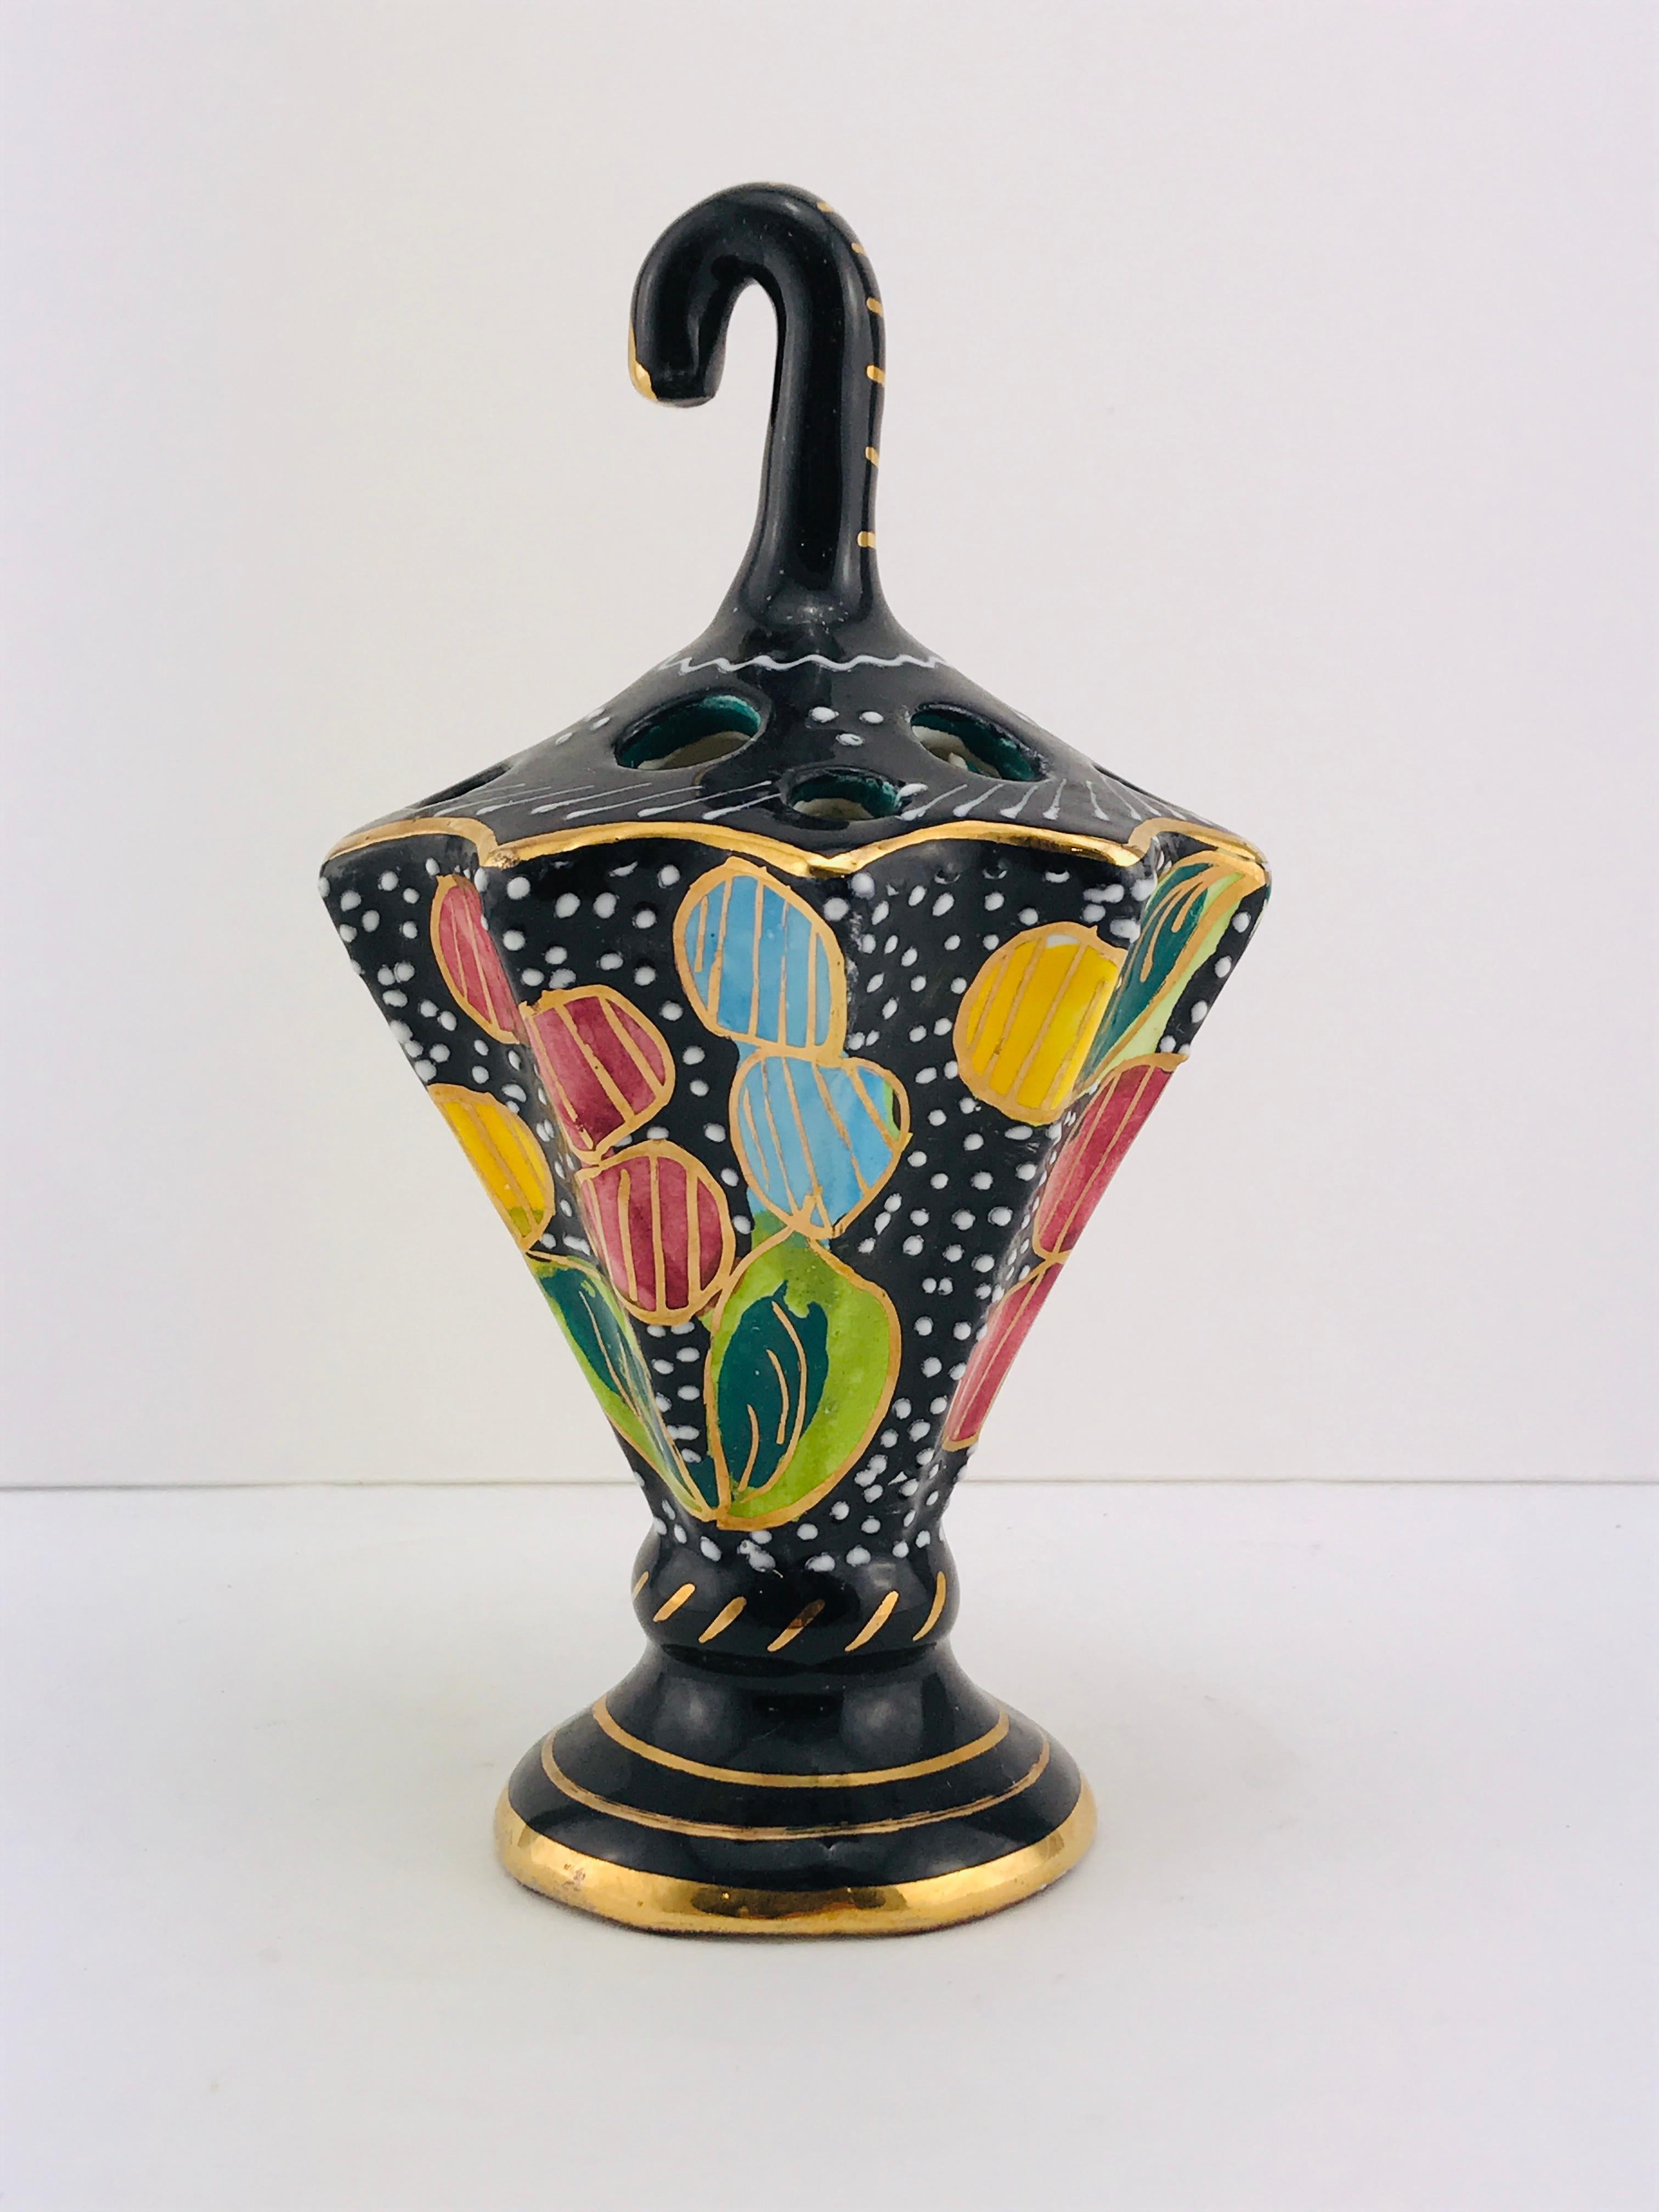 Wunderschöne Keramik von Cima (Italien) wahrscheinlich als Stifthalter entworfen, tolle Farben und in sehr gutem Zustand.
  